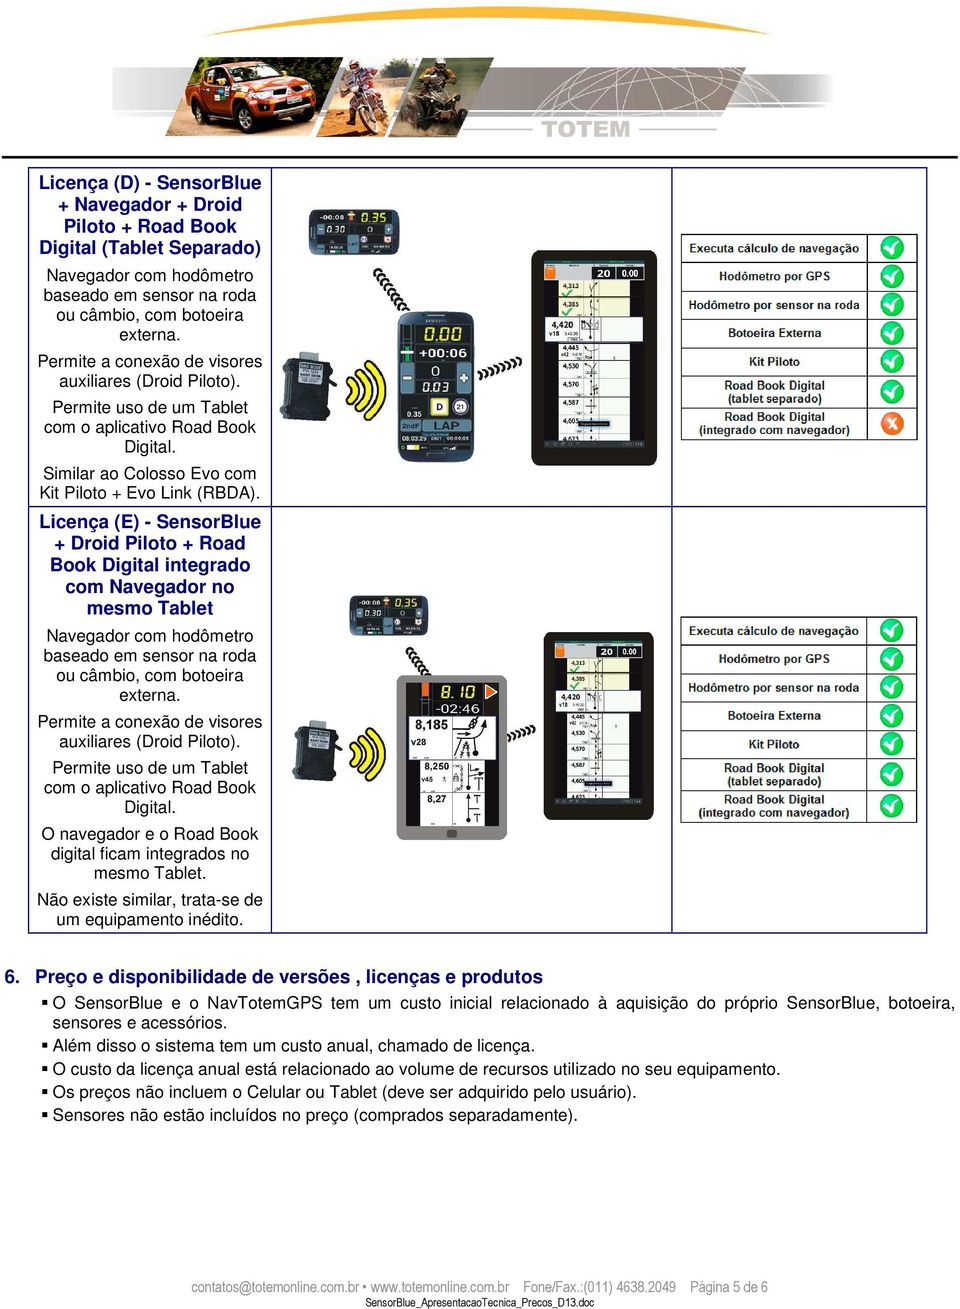 Licença (E) - SensorBlue + Droid Piloto + Road Book Digital integrado com no mesmo Tablet com hodômetro ou câmbio, com botoeira externa. Permite a conexão de visores auxiliares (Droid Piloto).